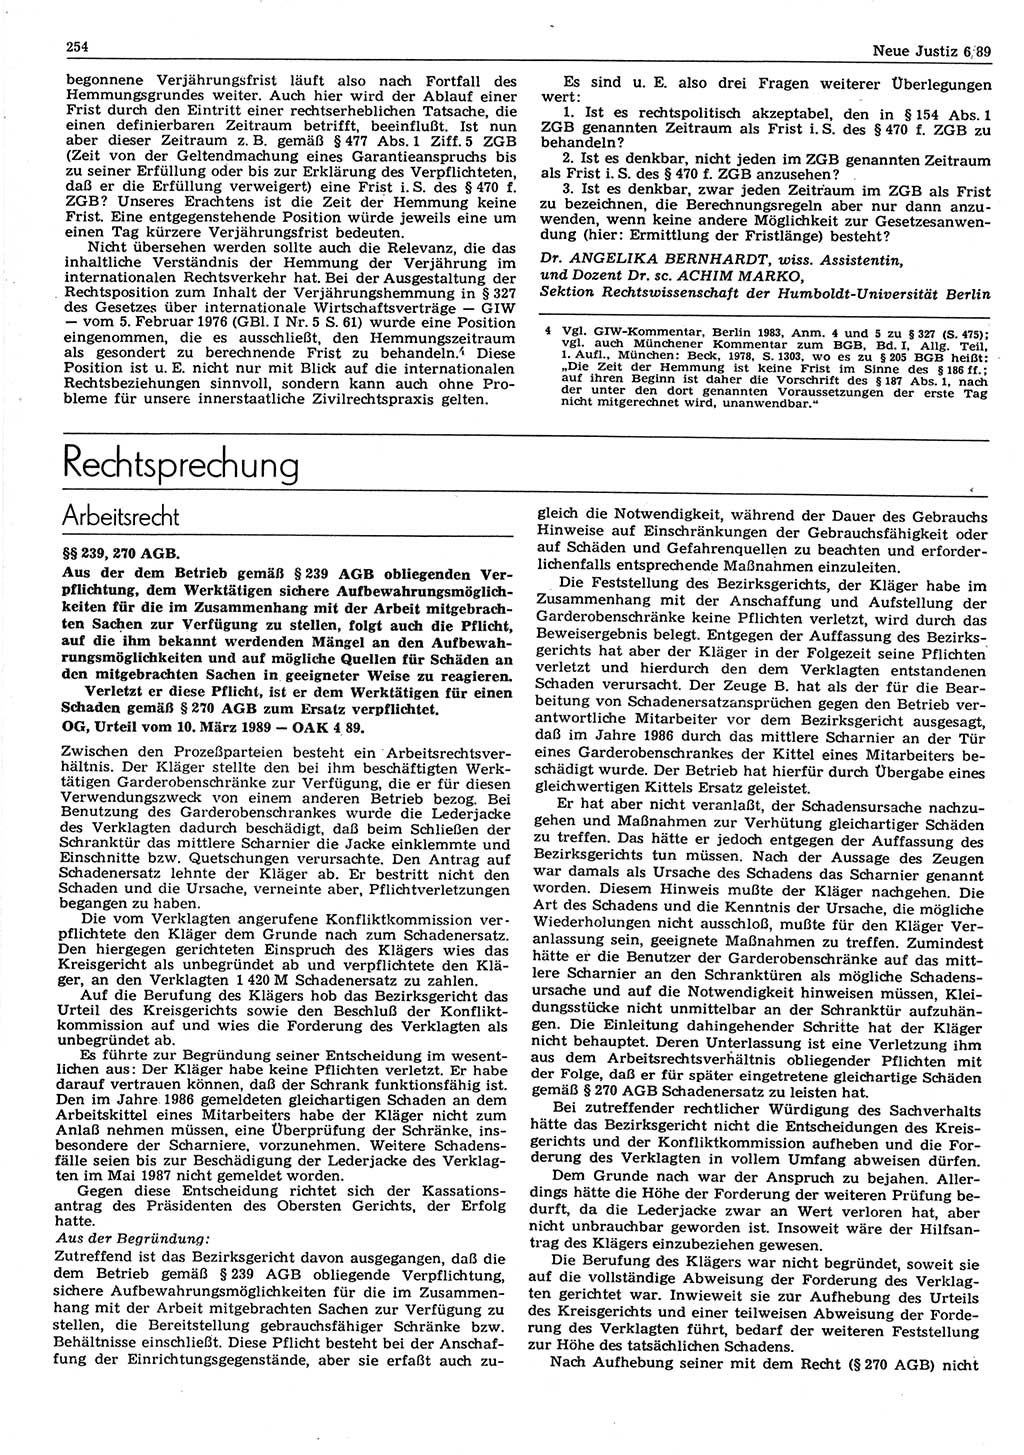 Neue Justiz (NJ), Zeitschrift für sozialistisches Recht und Gesetzlichkeit [Deutsche Demokratische Republik (DDR)], 43. Jahrgang 1989, Seite 254 (NJ DDR 1989, S. 254)